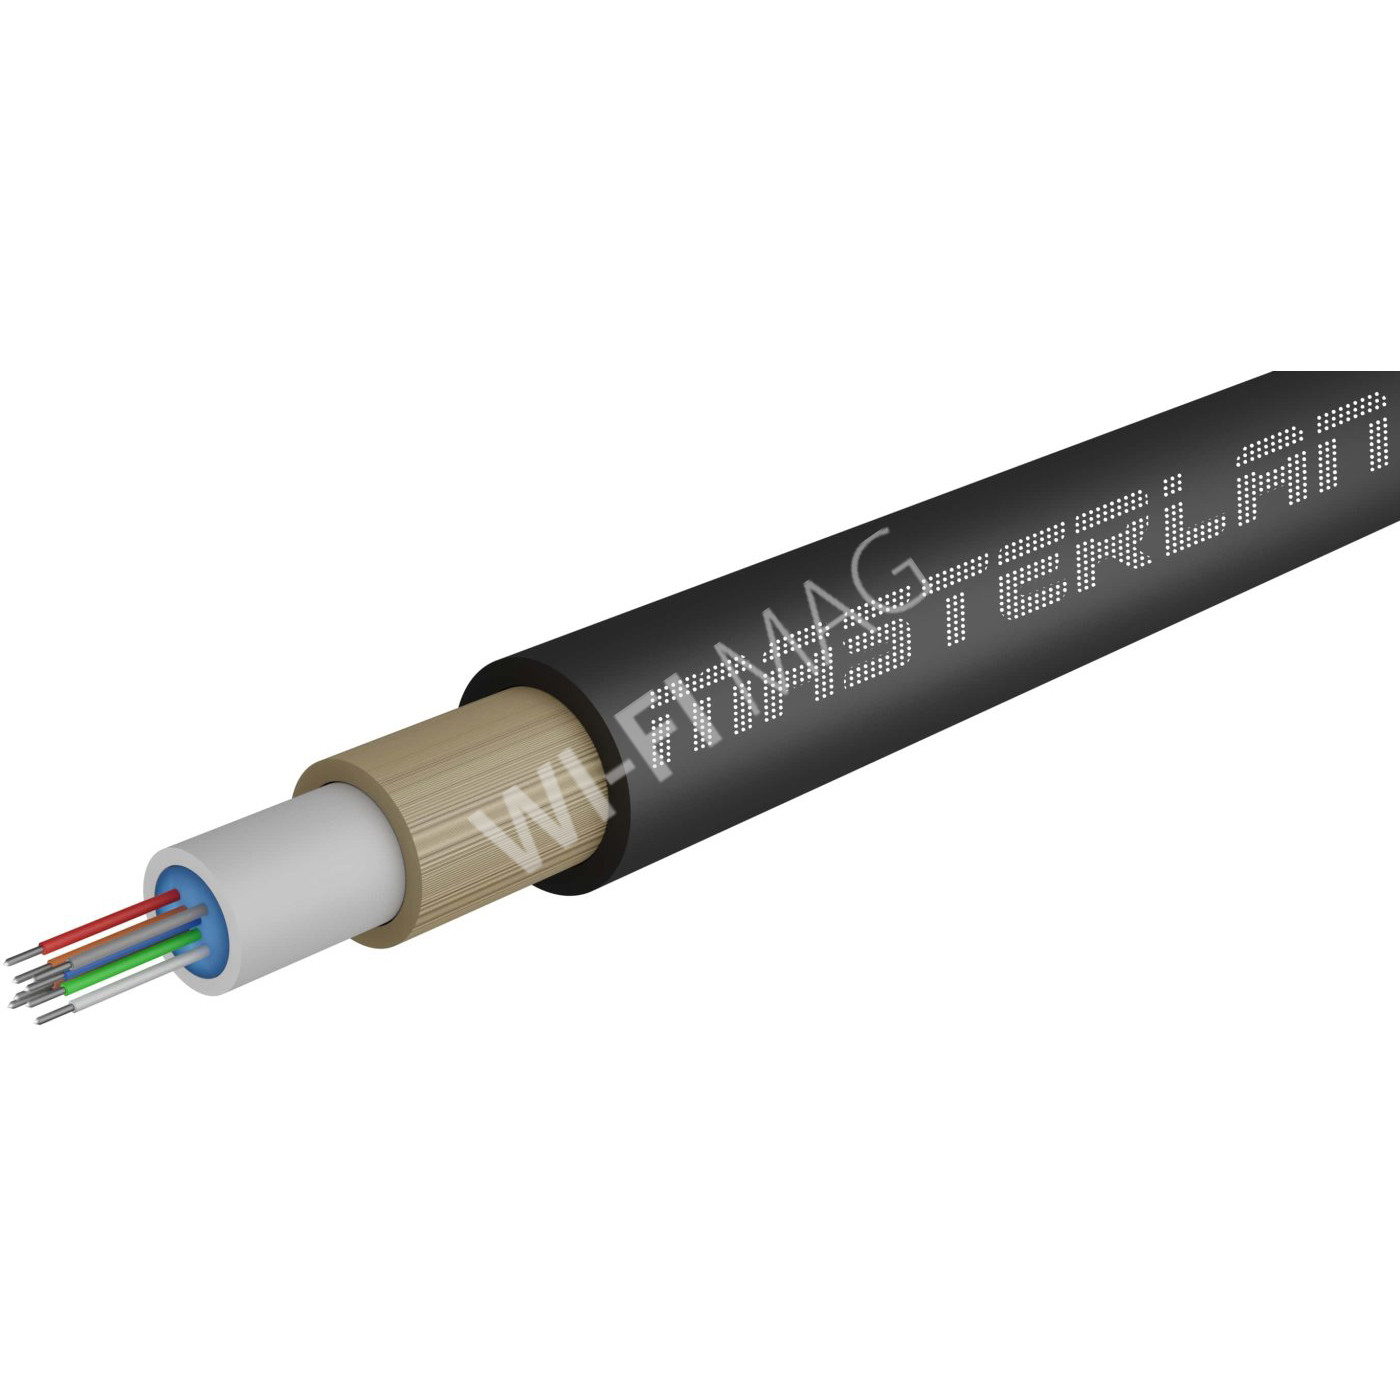 Masterlan Air1 fiber optic cable - 8vl 9/125, air-blowen, SM, HDPE, G657A1, 2000m, одномодовый оптический кабель, чёрный